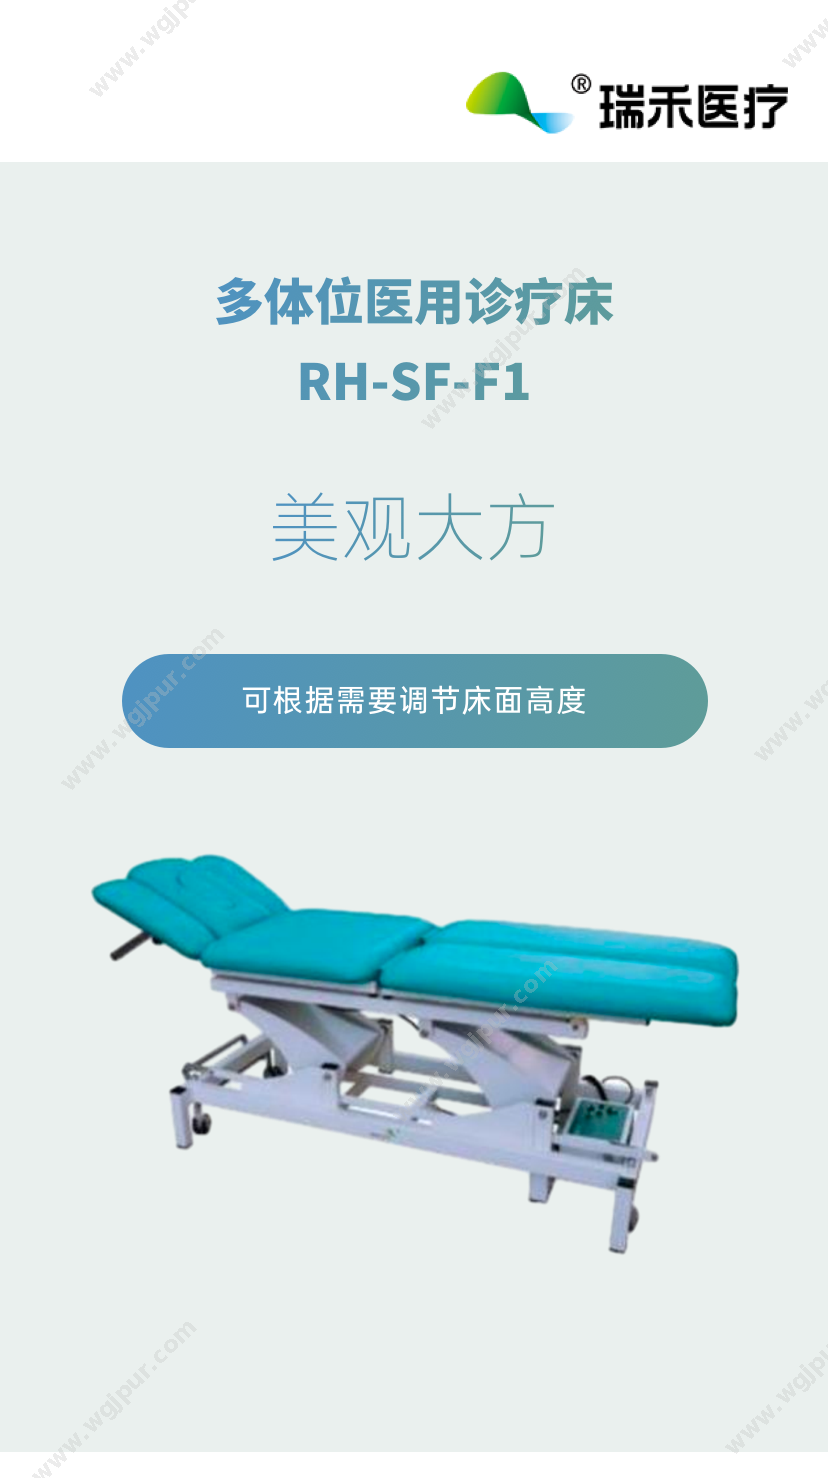 瑞禾医疗 RH-SF-F1 康复设备